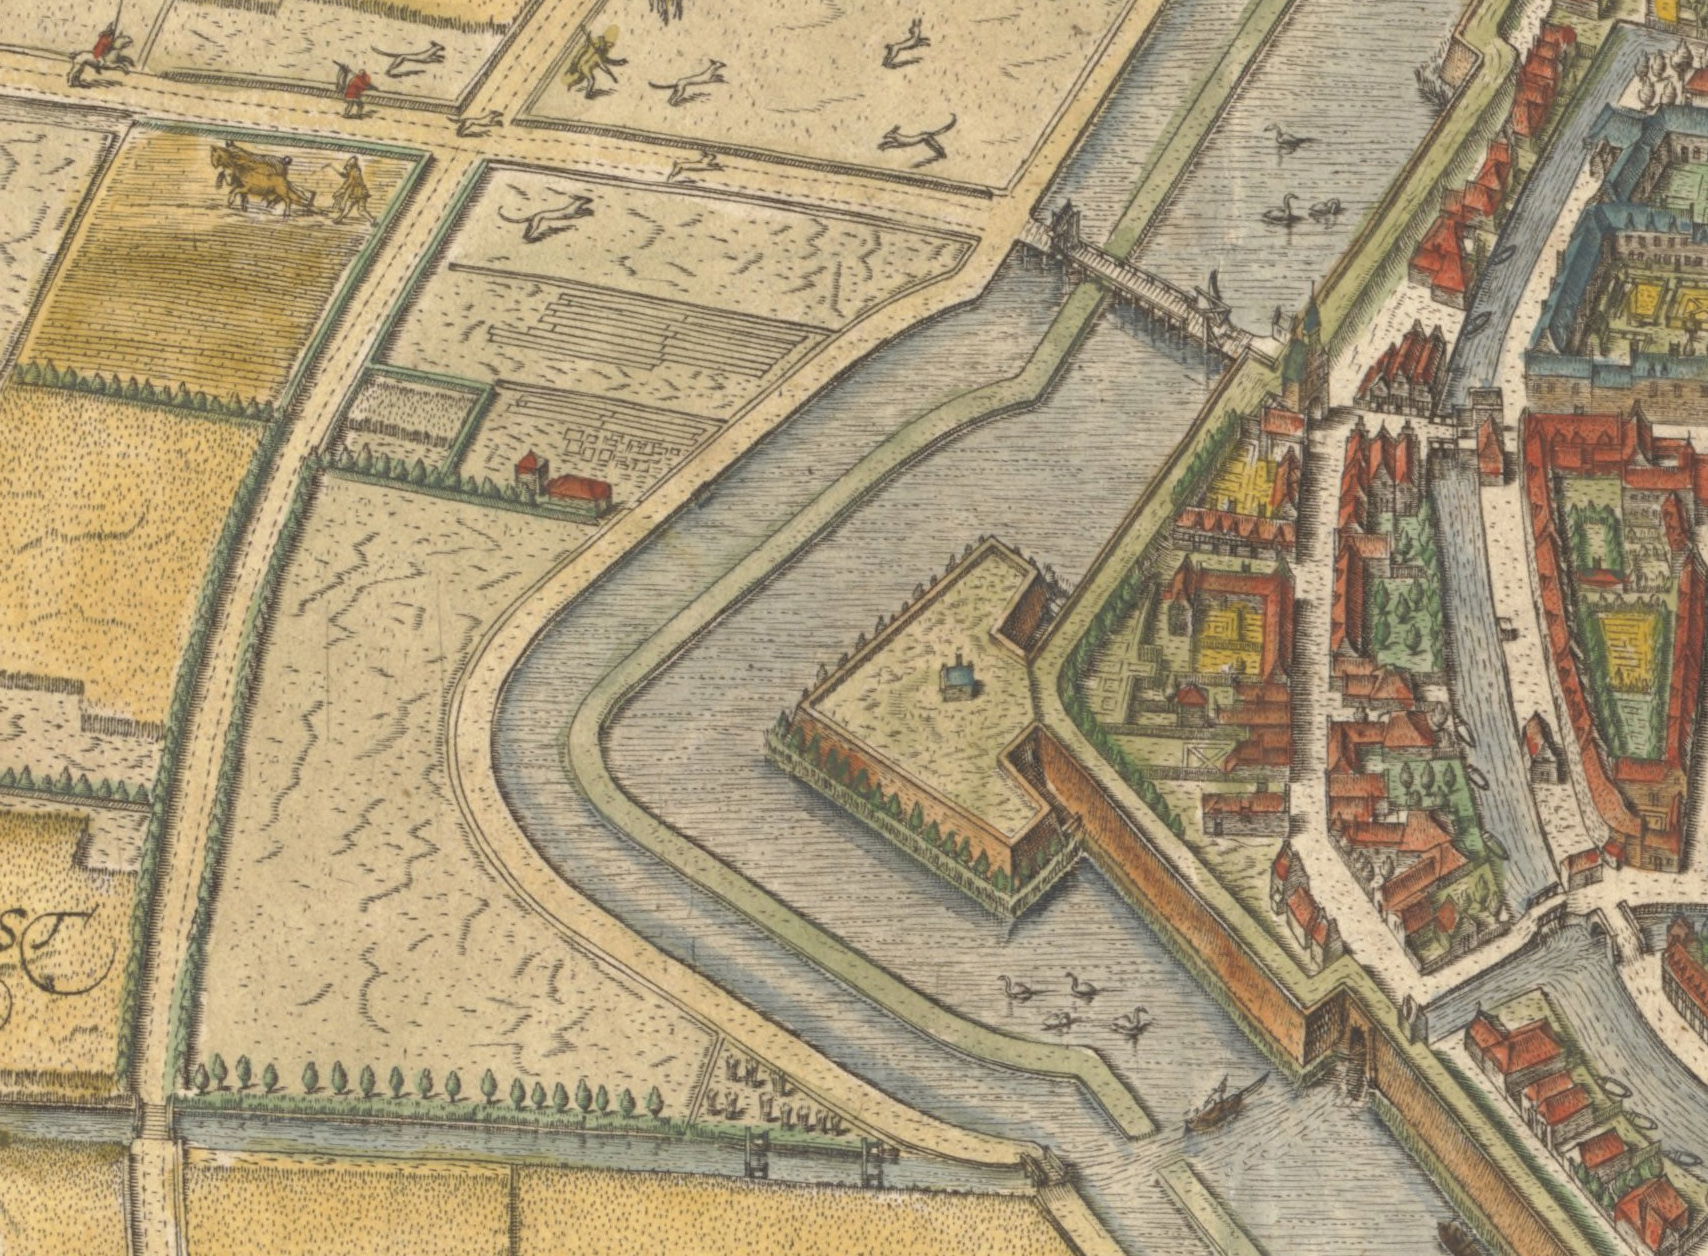 geesterhout 1597